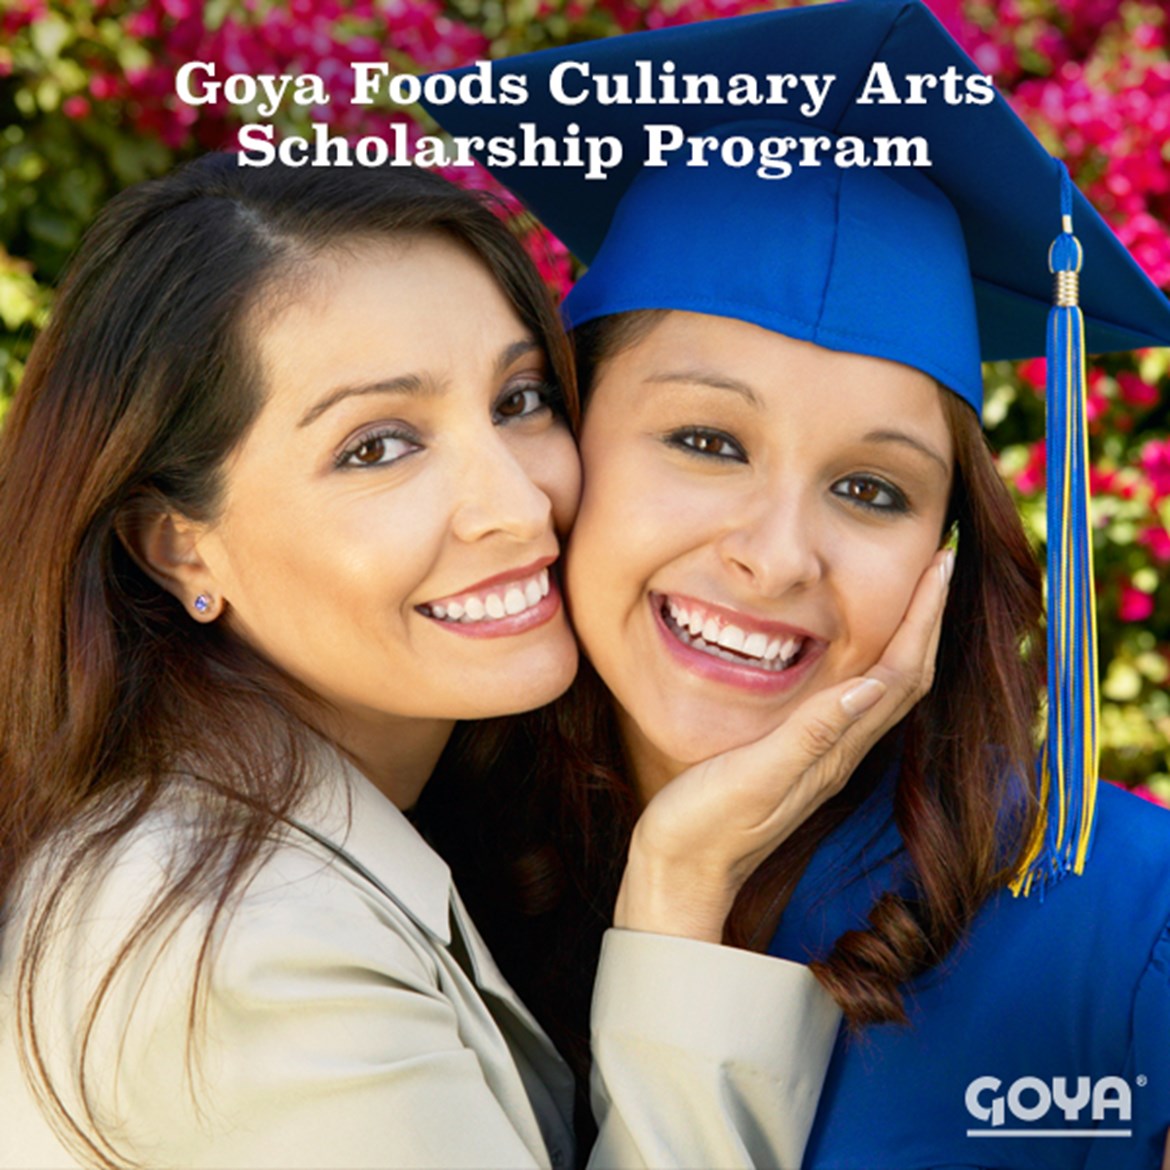 Press Release: Goya Foods Ofrece Cuatro Becas de Artes Culinarias Por $20,000 a Estudiantes de Toda La Nacion